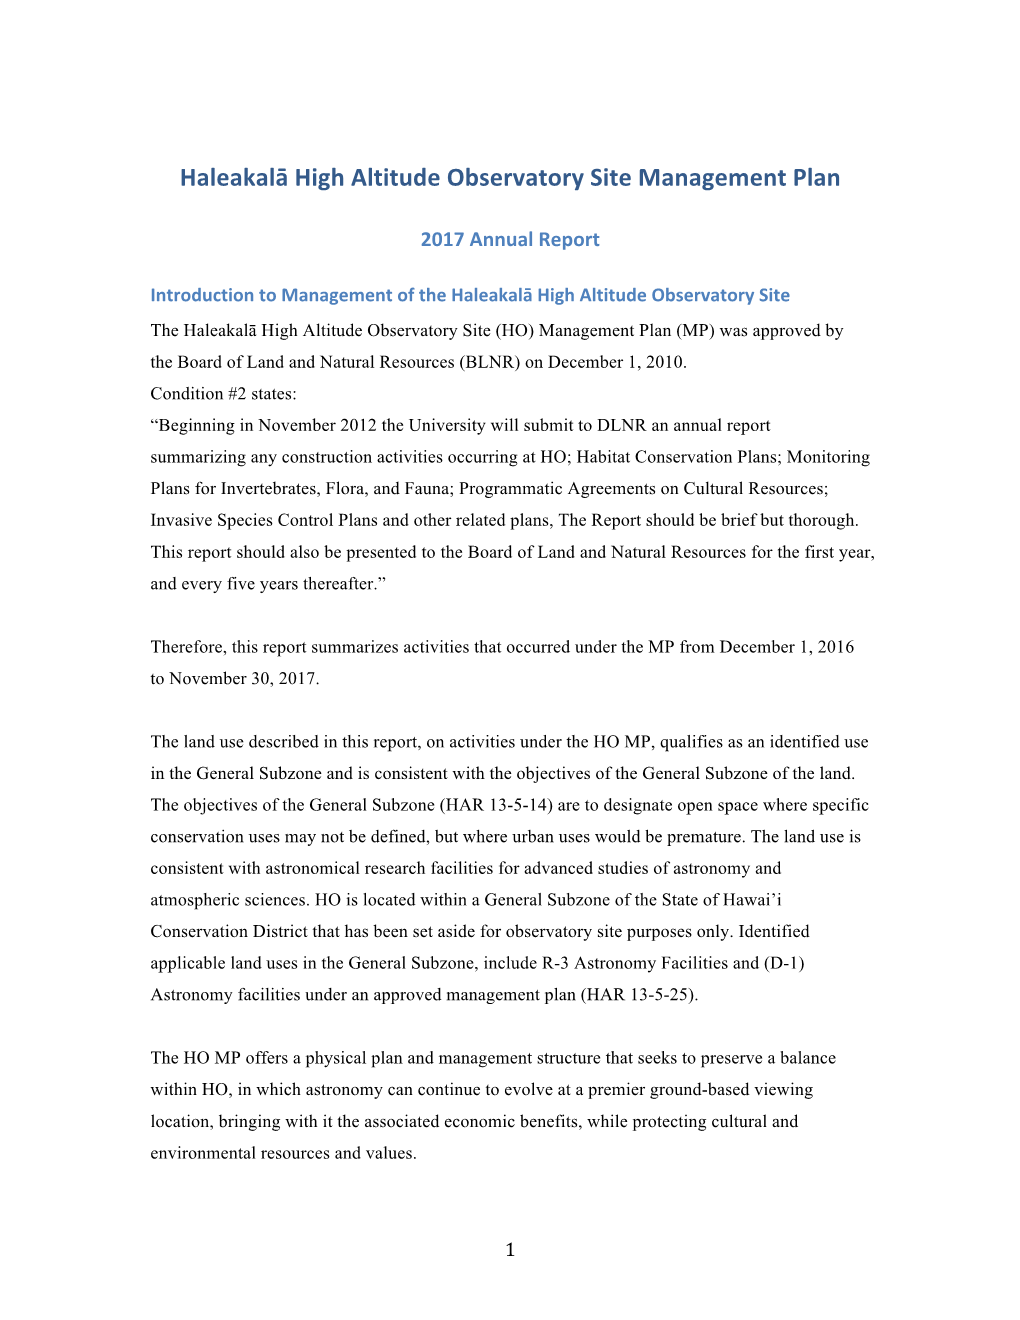 2017 Report on the Haleakalā High Altitude Observatory Site